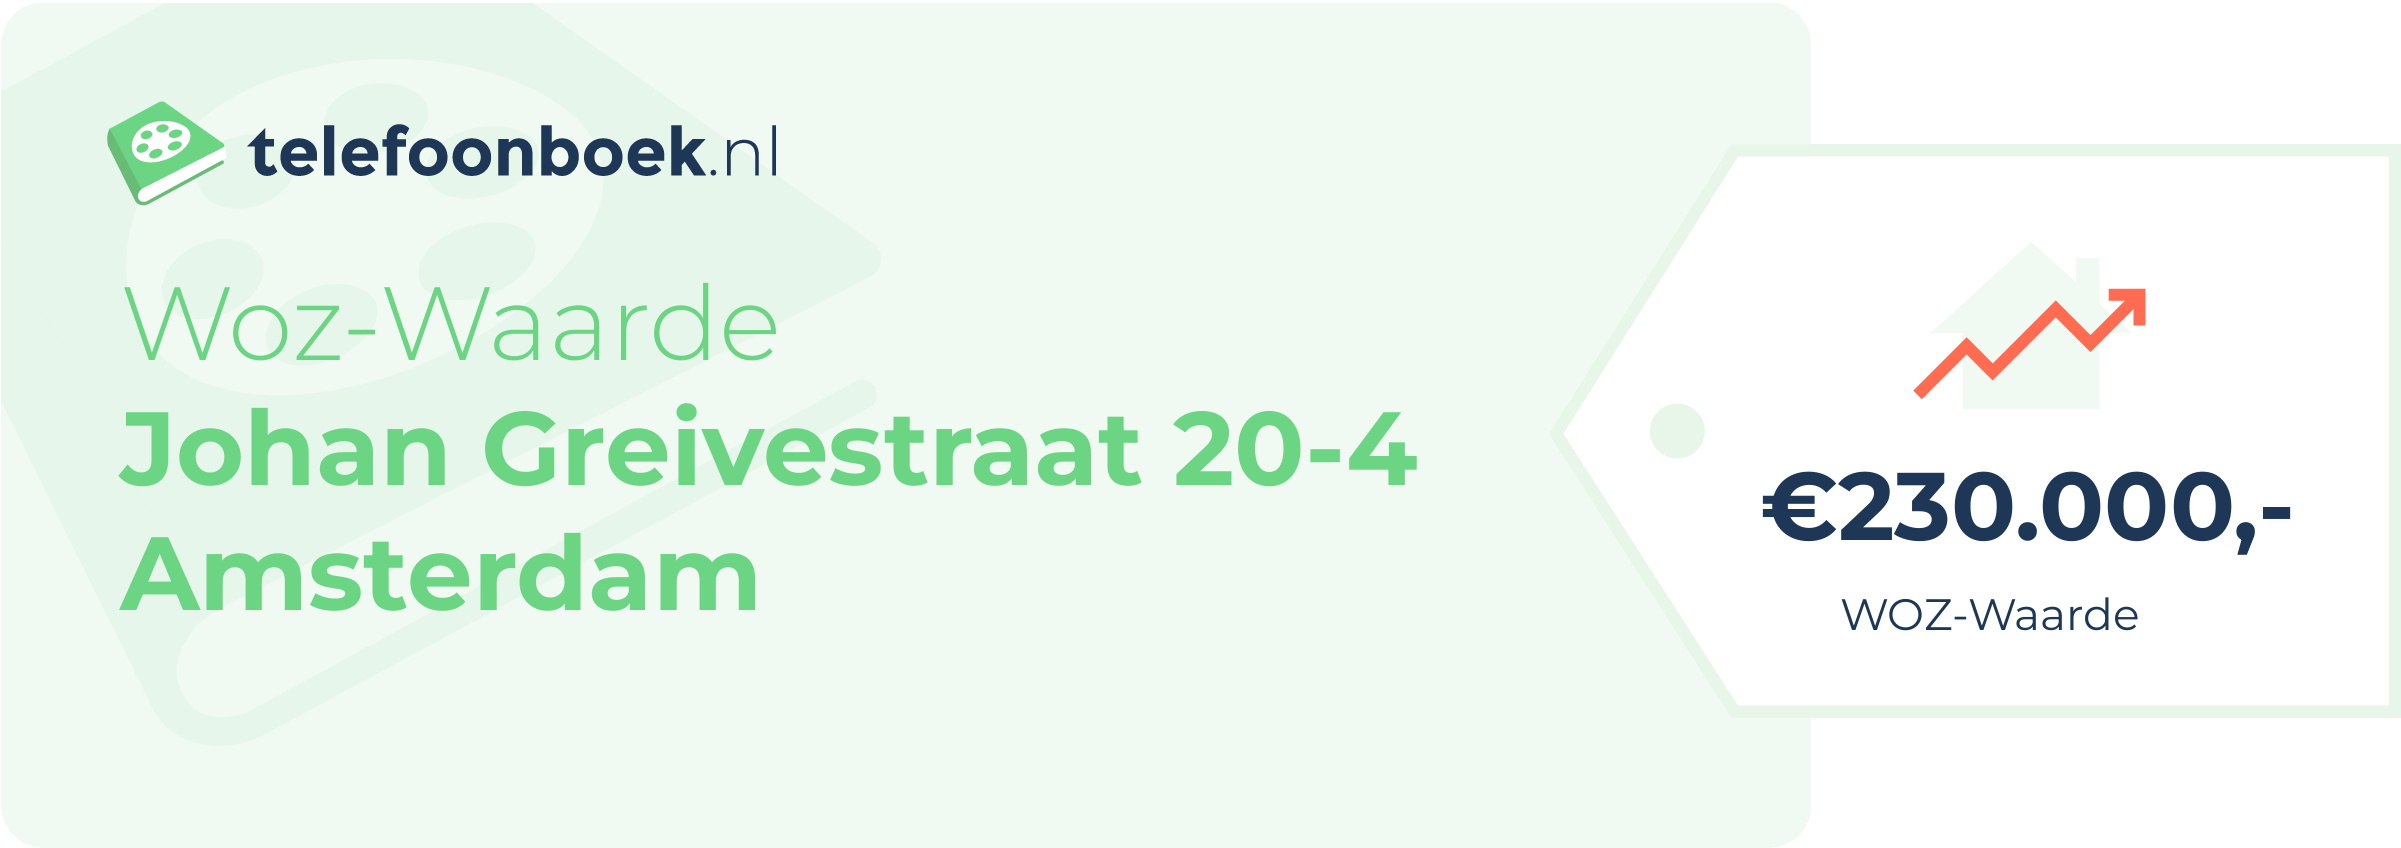 WOZ-waarde Johan Greivestraat 20-4 Amsterdam